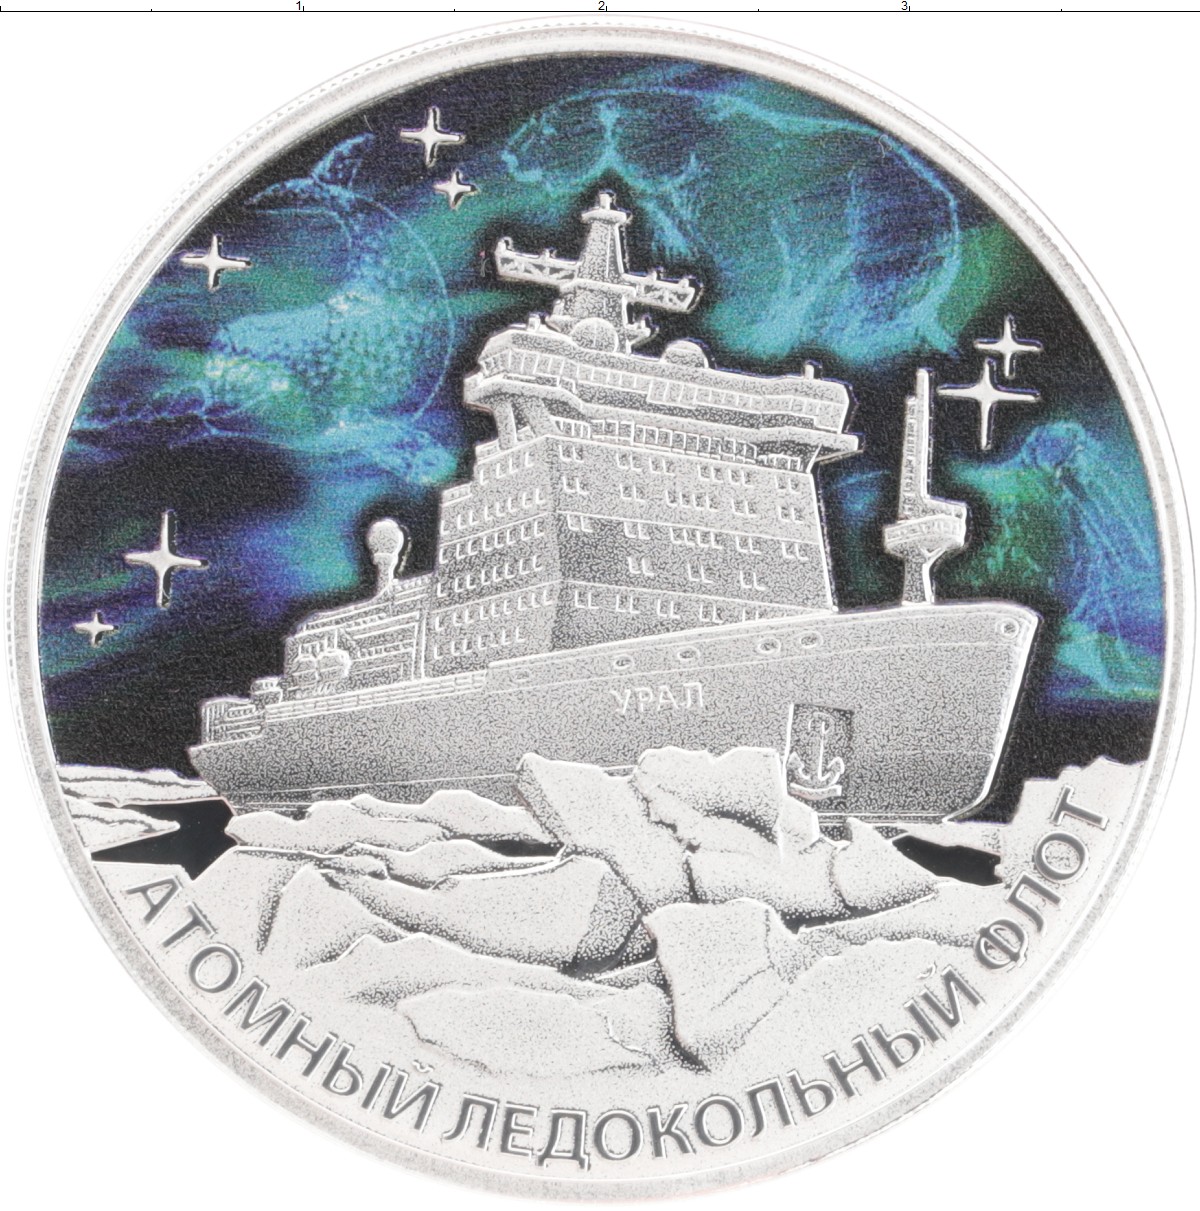 3 рубля ледокольный. Орден Победы 3 рубля серебро. 3 Рубля 2022. 3 Рубля серебро 2022 года. Серебряные монеты российского флота.